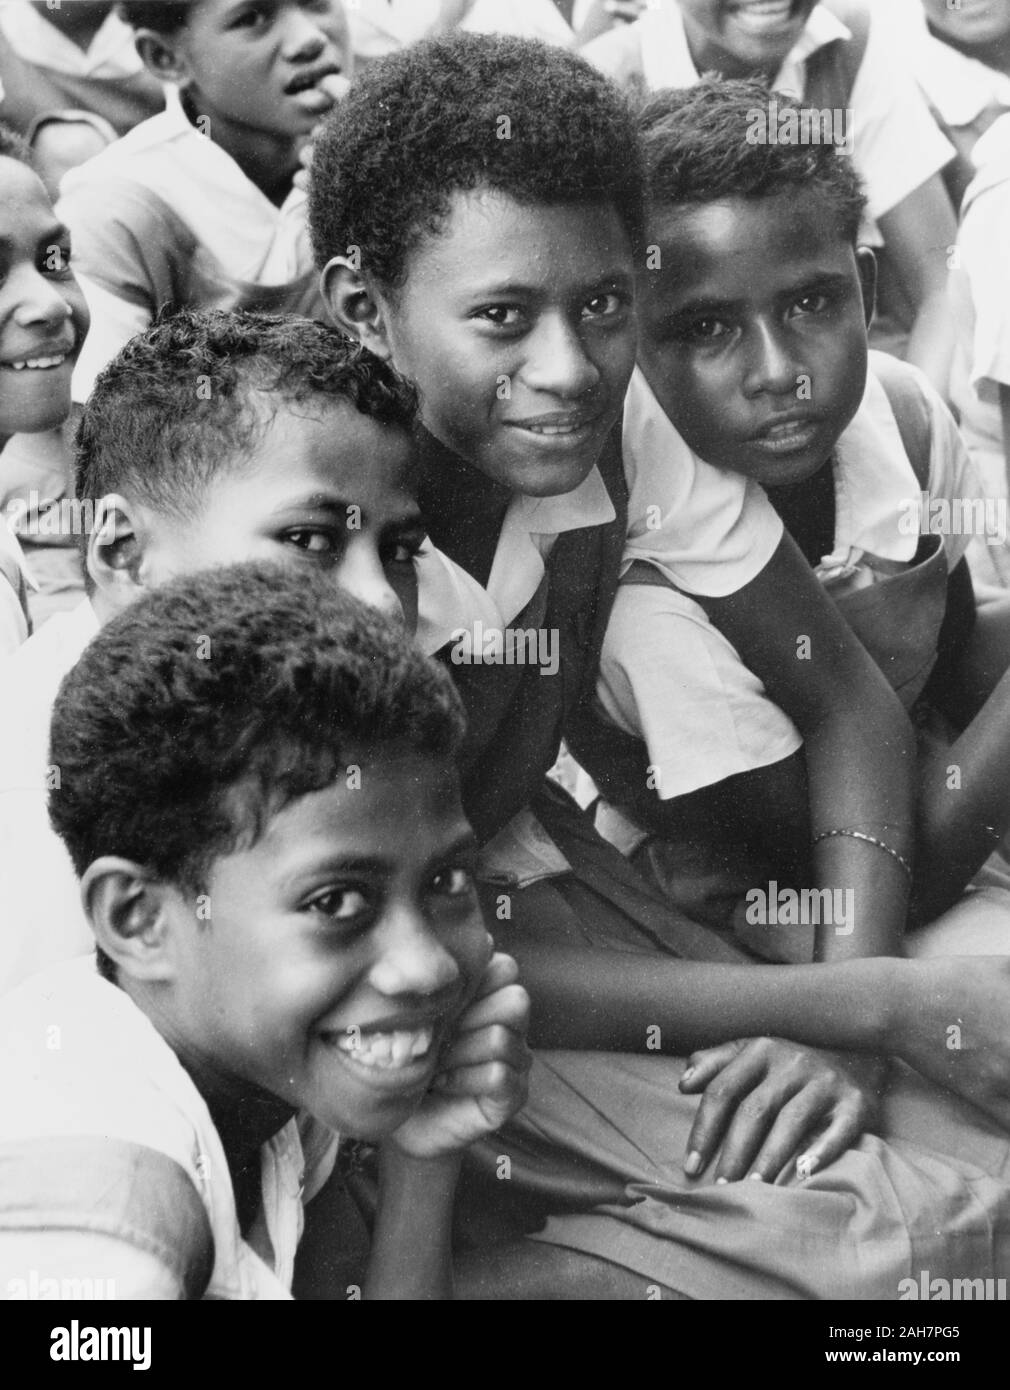 Fidji Fidji, les filles en uniforme. Ce portrait semble présentent quatre filles du même âge, peut-être les écoliers, tous habillés en uniforme comprenant des blouses et des robes pinafore. Sous-titre suivant : une mère avec sa petite famille, 1965. 2005/010/1/14/35. Banque D'Images